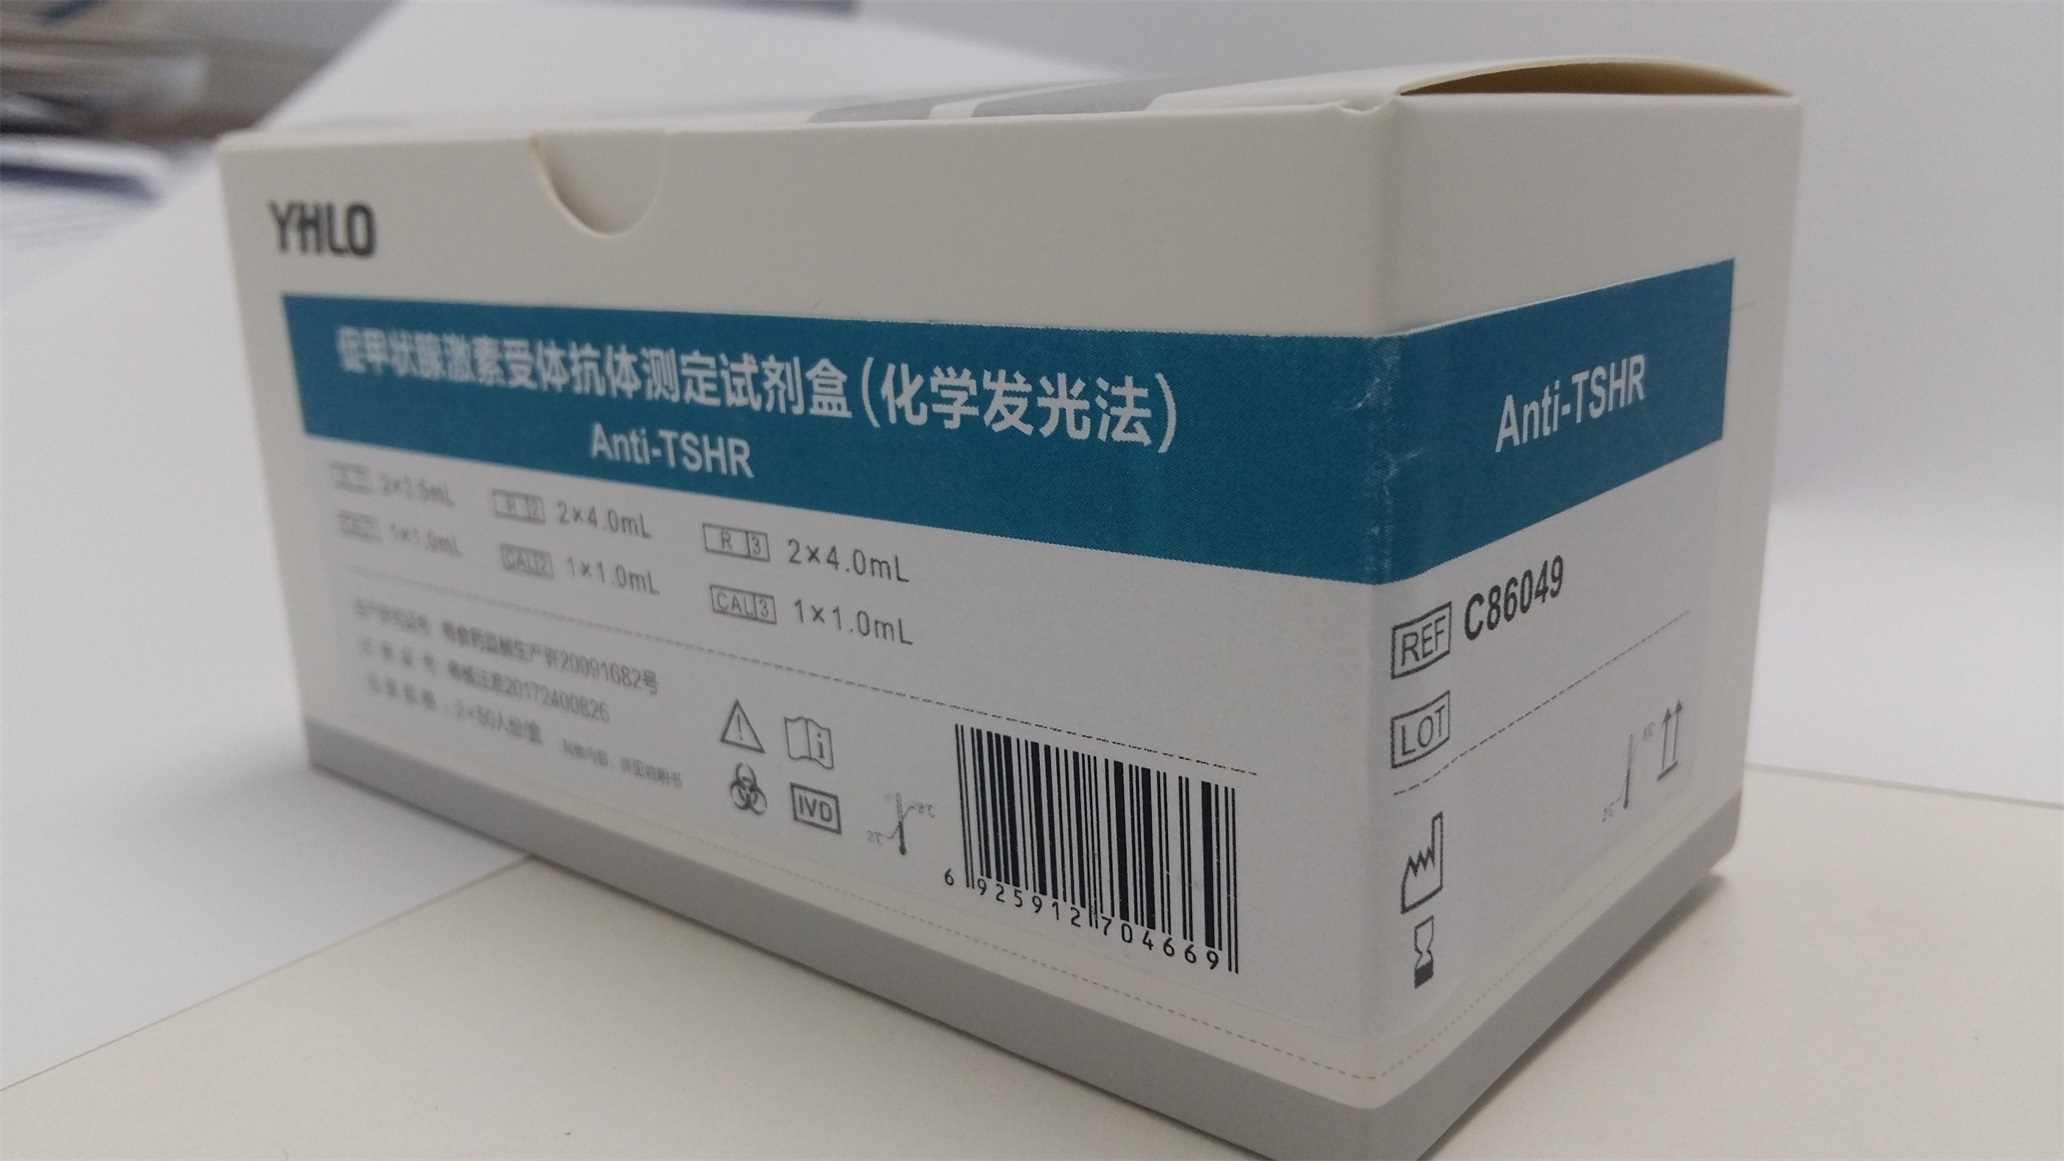 【亚辉龙】促甲状腺激素受体抗体测定试剂盒(化学发光法)